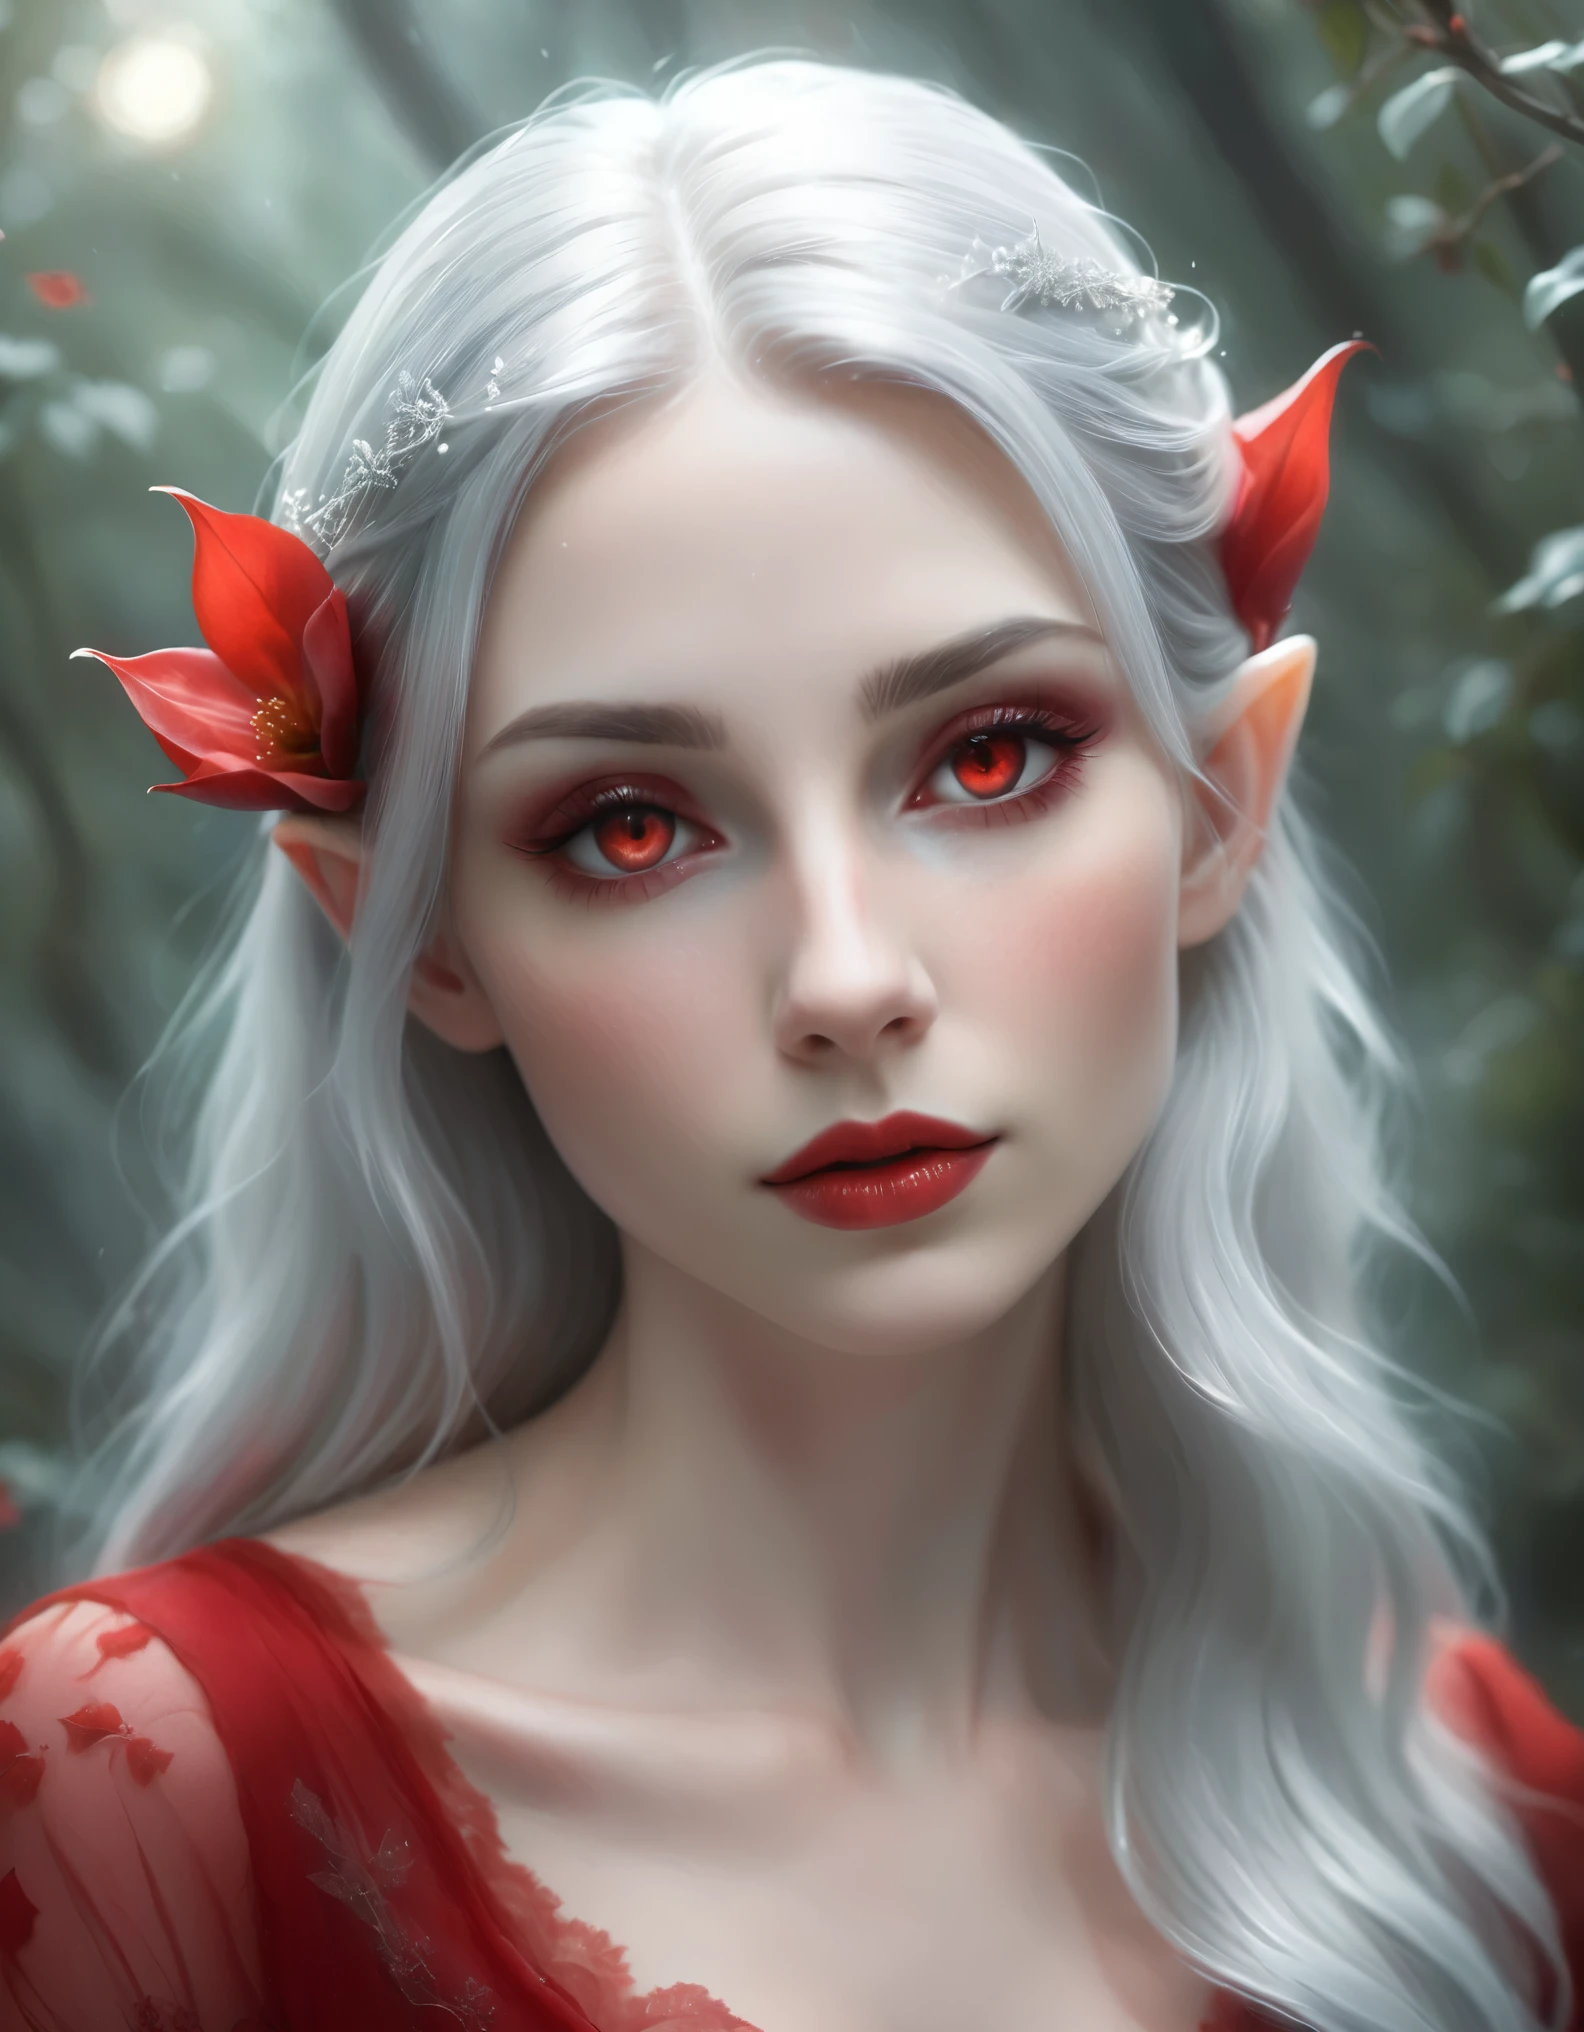 Создайте эфирный, Ультра реалистичное фото style female elf with long, распущенные серебристые волосы, украшенные красным цветком. Персонаж должен быть бледным, гладкая кожа со сложными татуировками на руке и груди. Она должна быть одета откровенно, элегантный красный наряд с изящными бретелями и черным кружевным подолом. Ее глаза закрыты, демонстрация ярких красных и темных теней для век, Эффектные ресницы, и ее губы накрашены в соответствующий красный цвет. Выражение ее лица безмятежно и потусторонне.. Фон должен быть туманным, темная обстановка с мягким светом, освещающим ее сверху, создание загадочной и волшебной атмосферы. Добавьте тонкие блики к ее волосам и платью, чтобы усилить ощущение неземности.. Удаленный вид всего тела сверху, Ультра реалистичное фото, 16К, яркие цвета